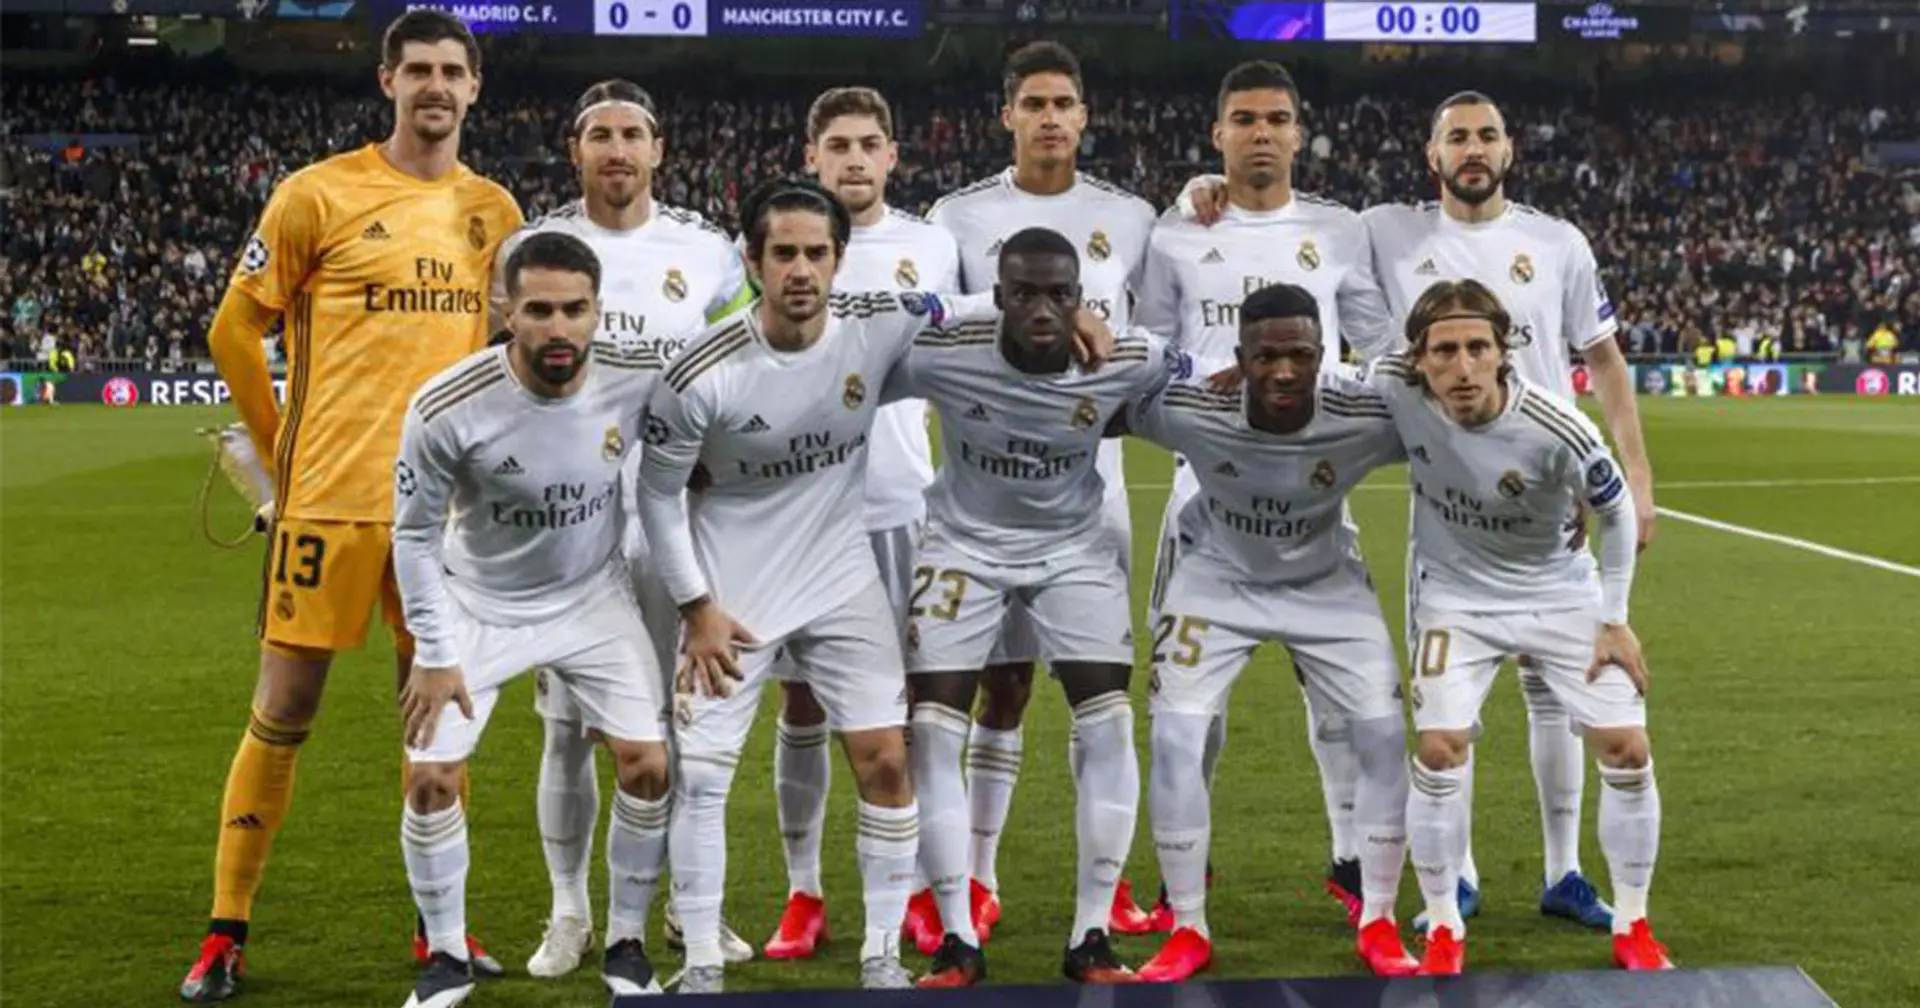 Die Position von Real Madrid unter den wertvollsten Mannschaften der fünf besten Ligen Europas enthüllt